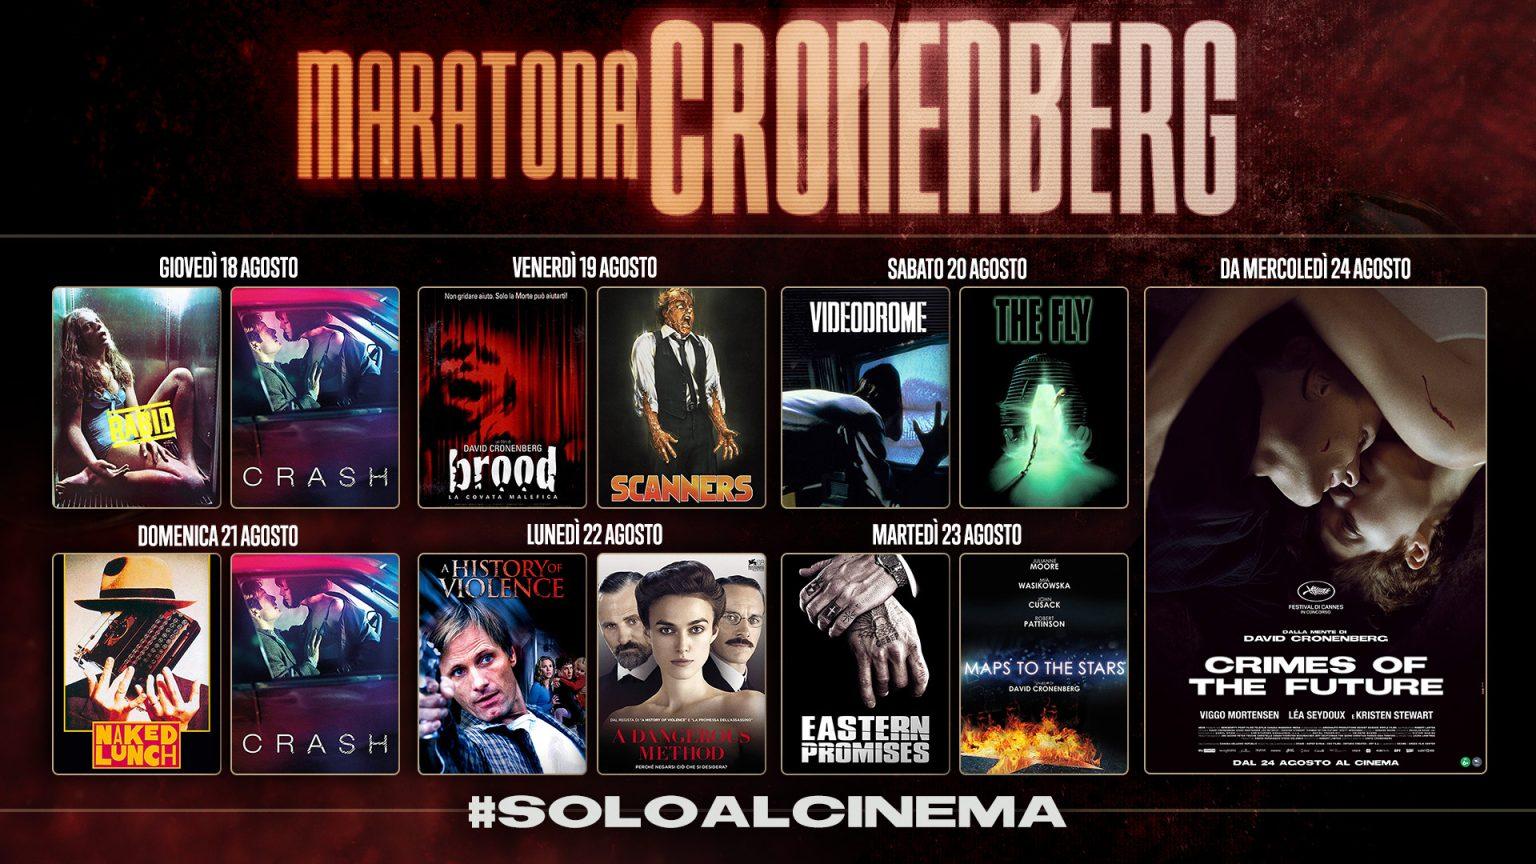 Maratona Cronenberg - Cinema Ambrosio